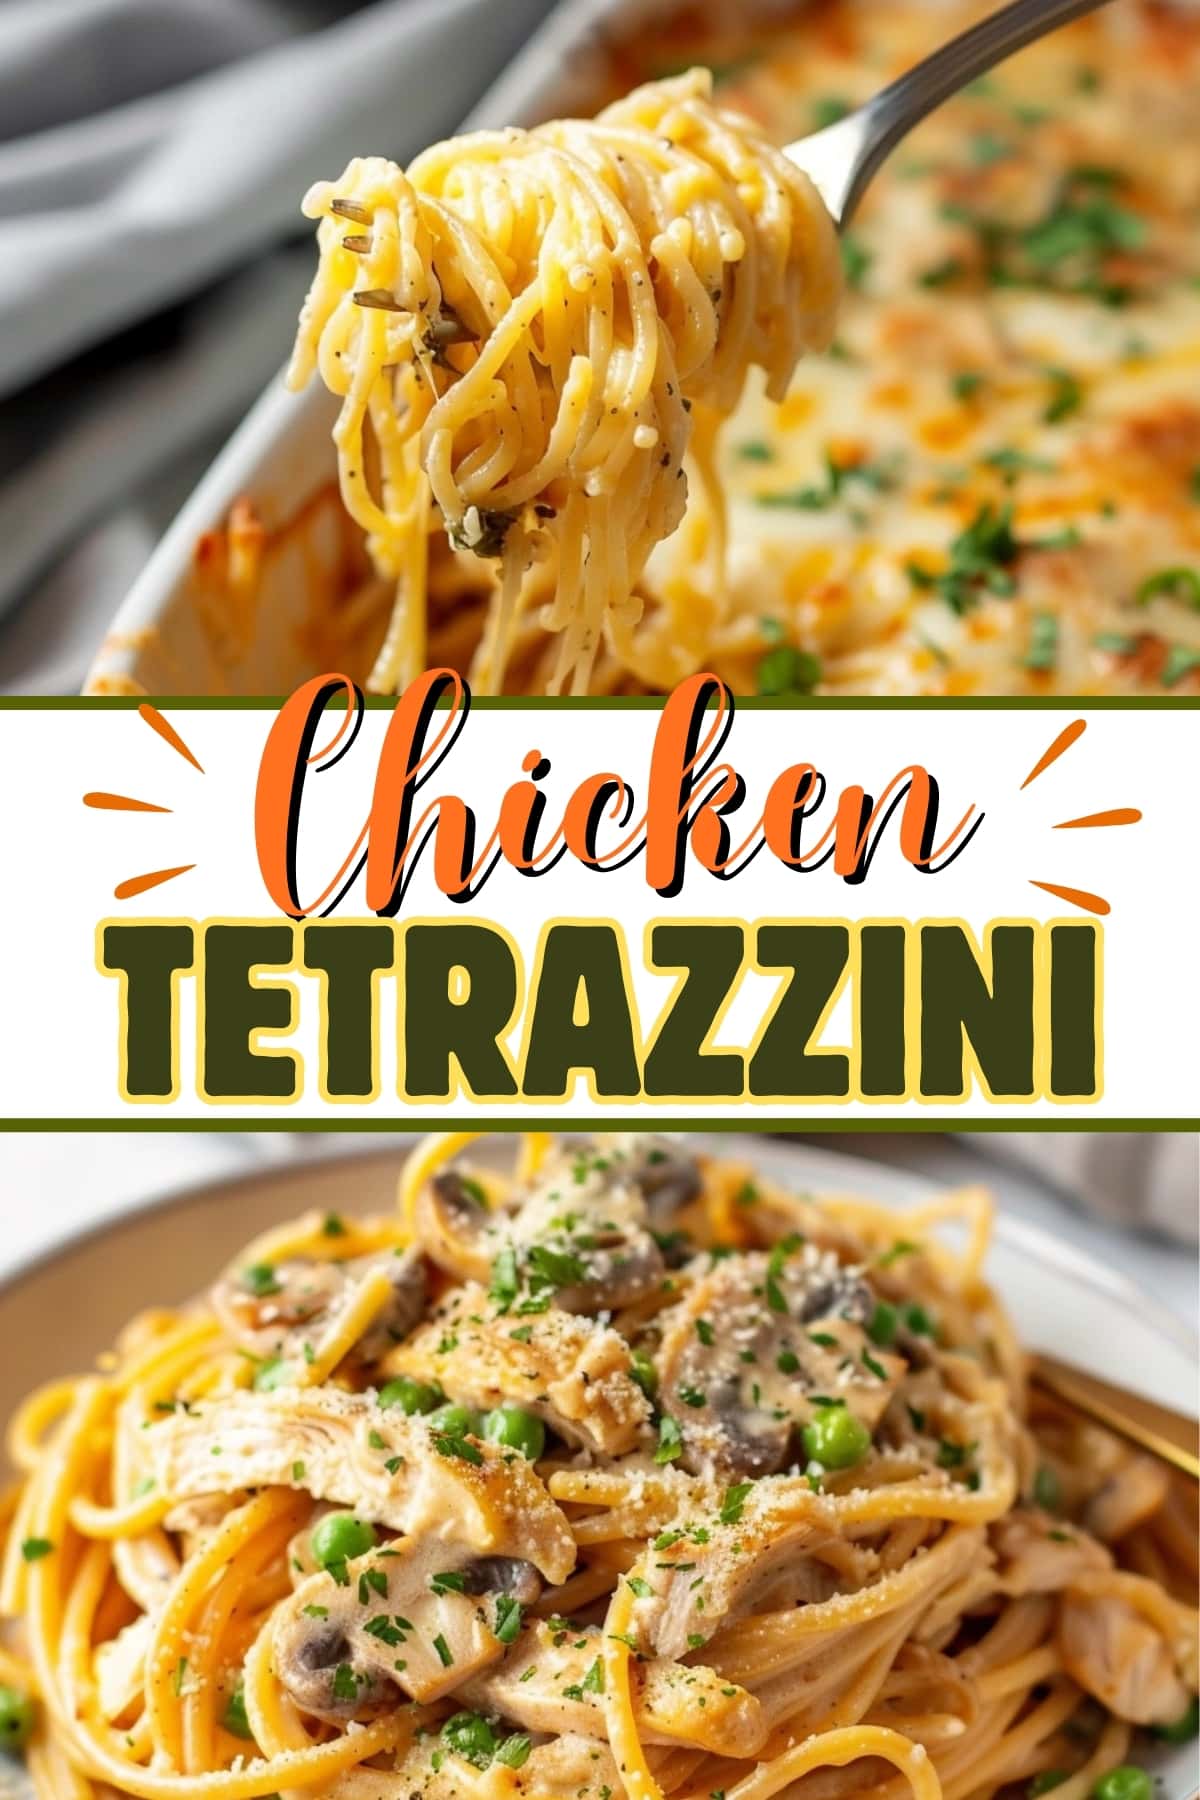 Chicken tetrazzini.